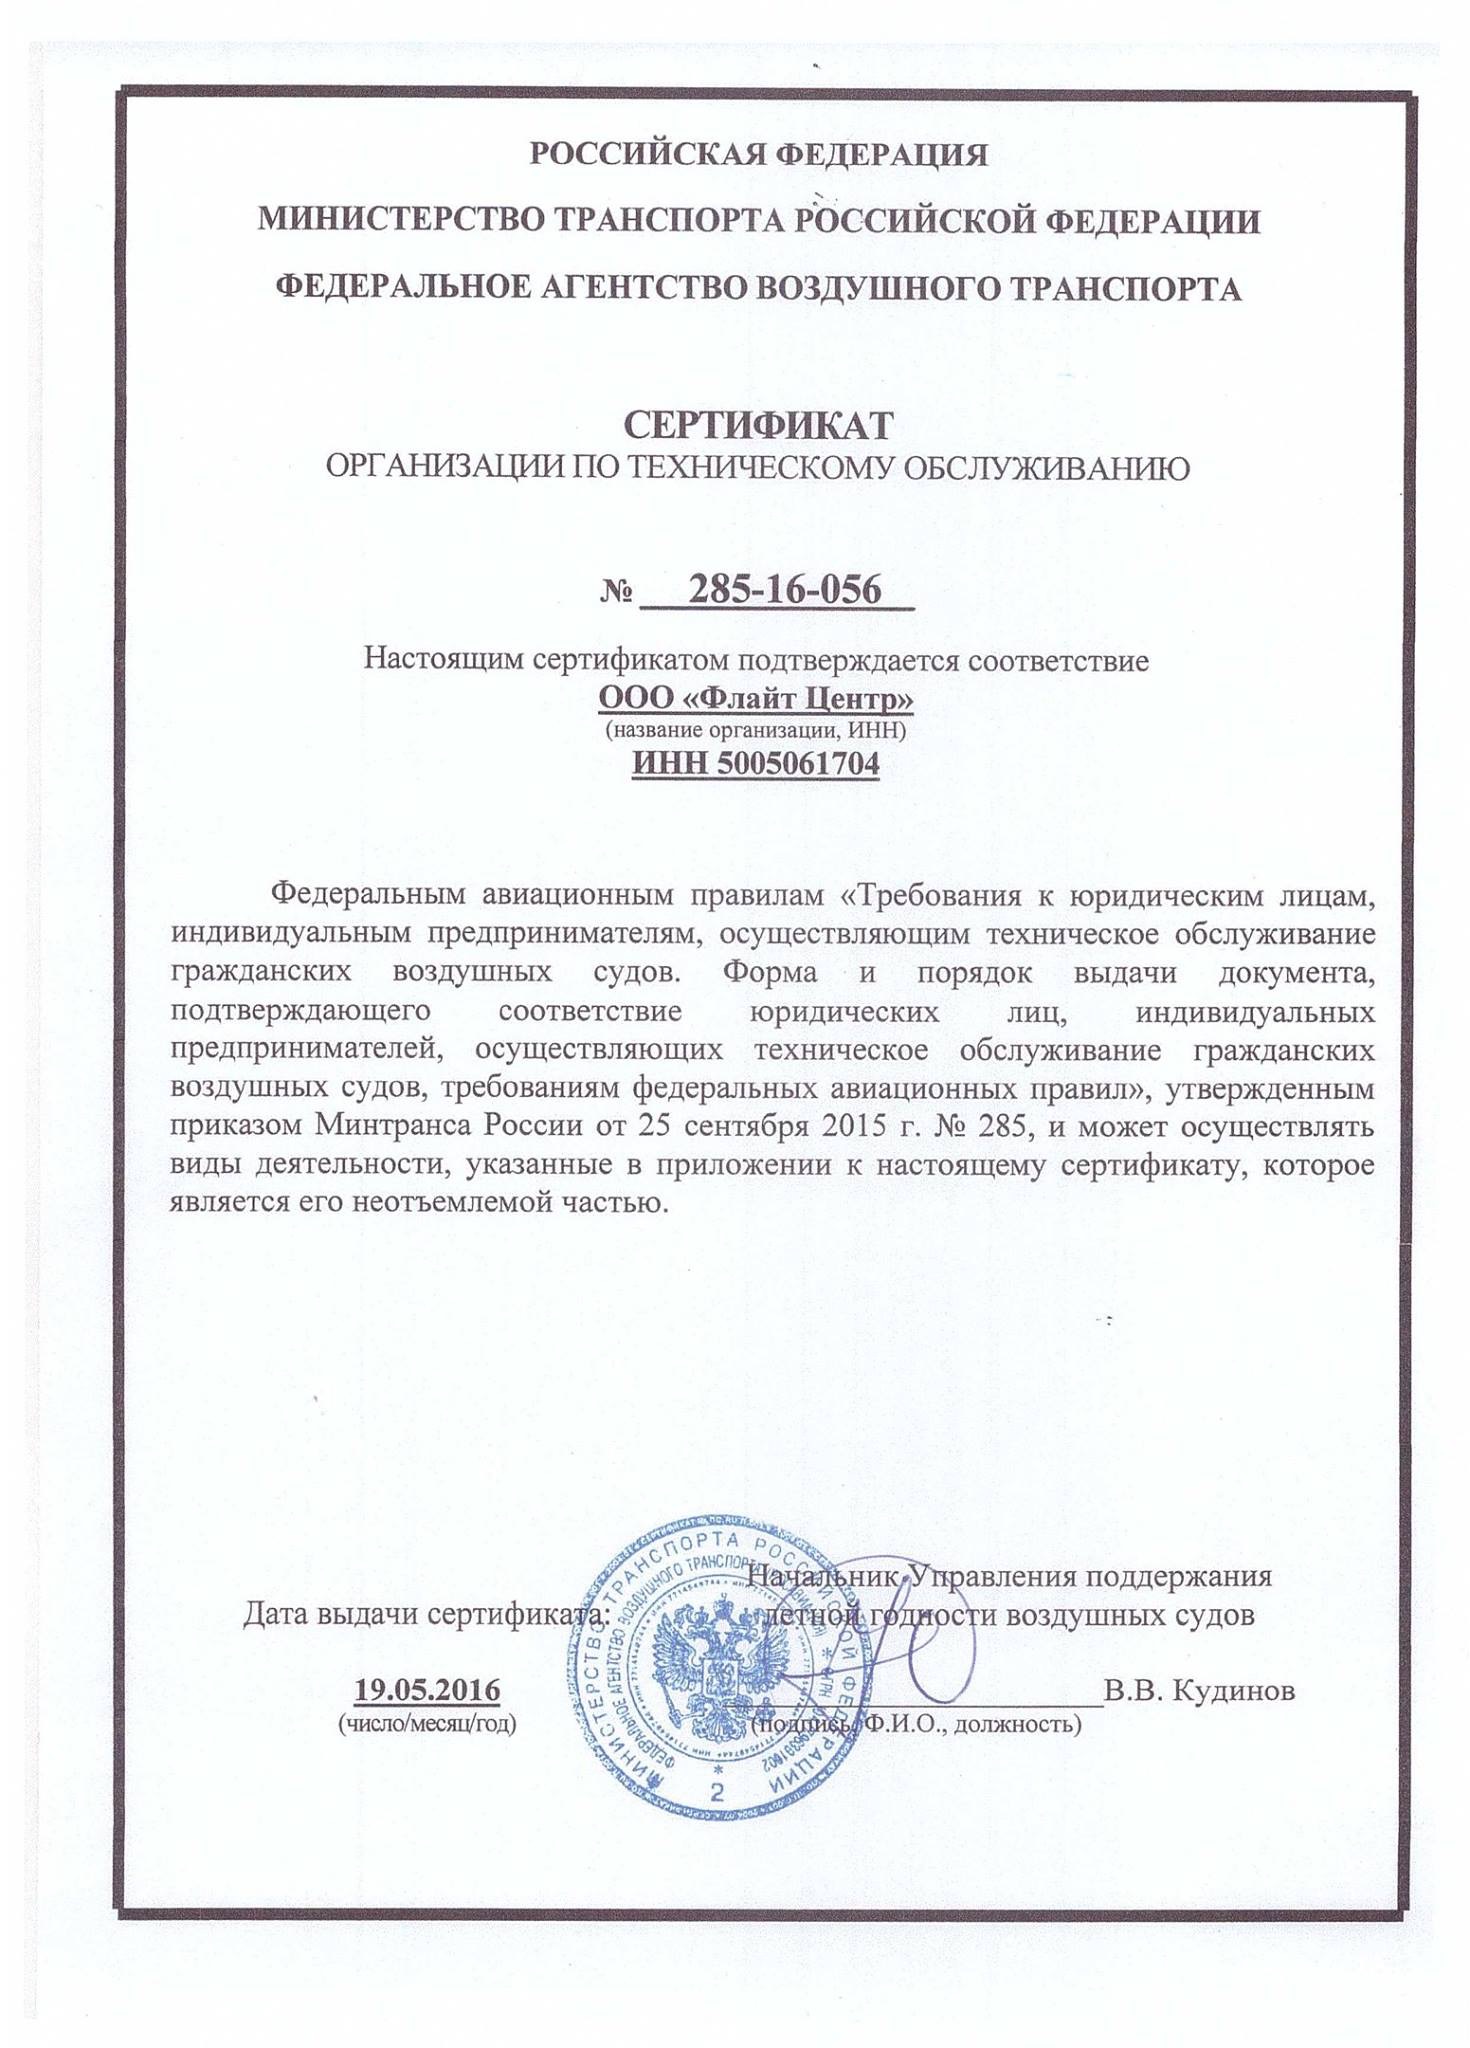 сертификат на техническое обслуживание самолётов Цессна 